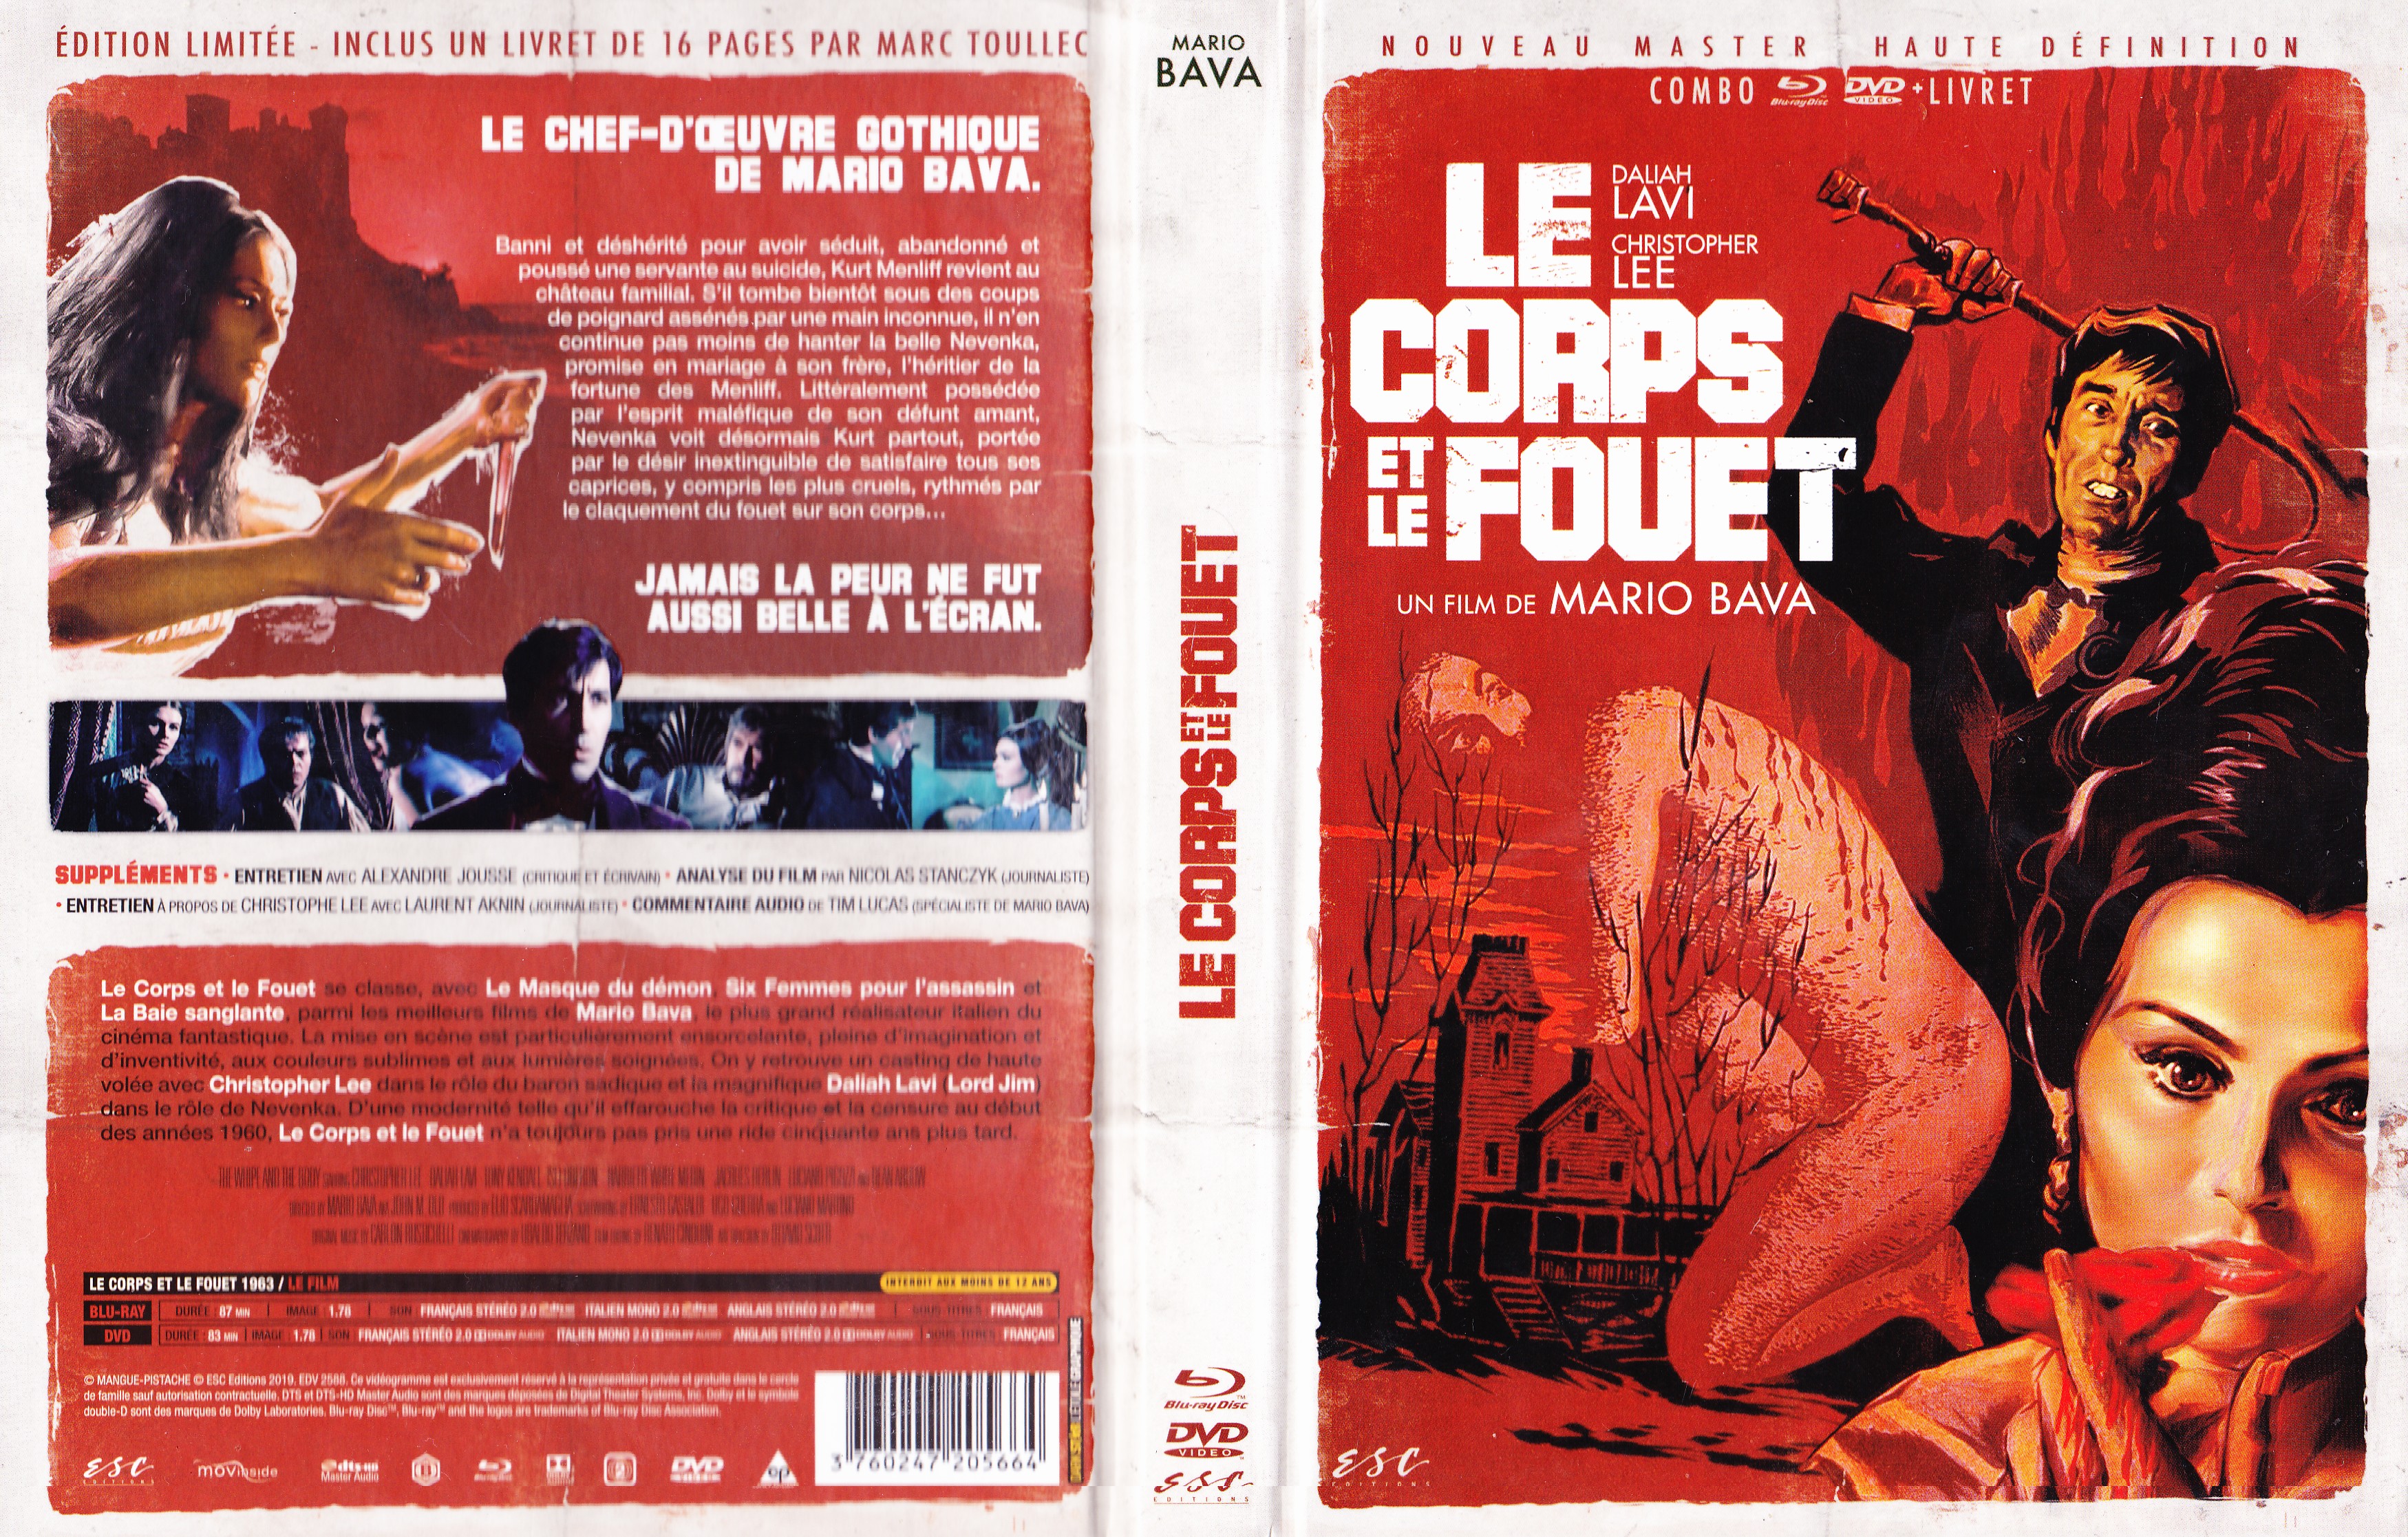 Jaquette DVD Le corps et le fouet (BLU-RAY)